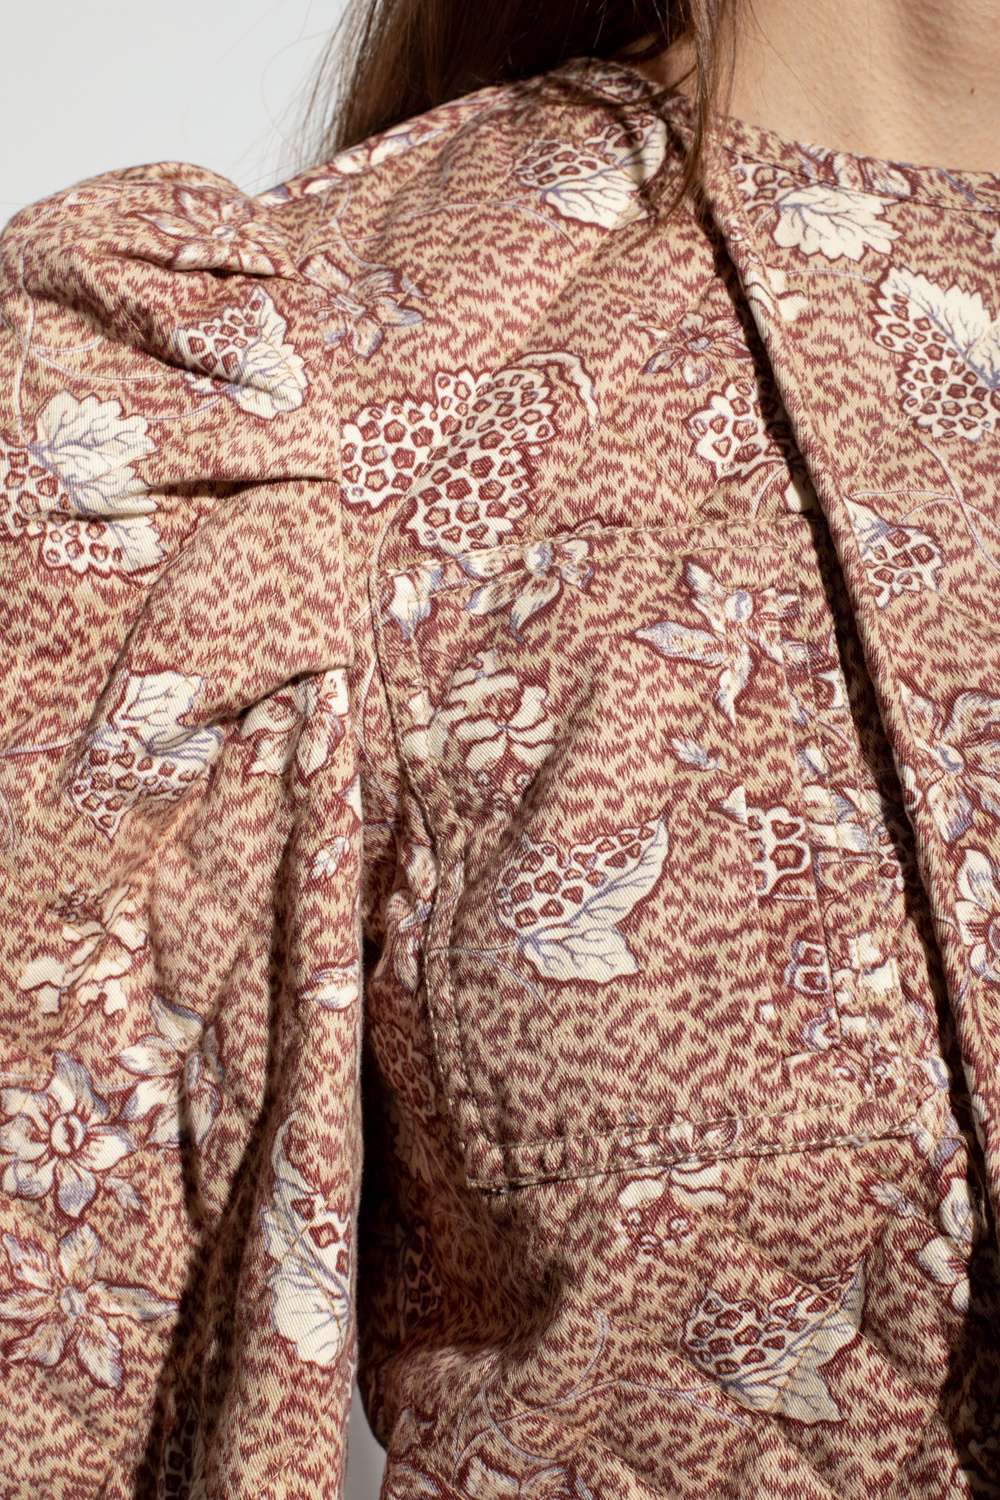 Ulla Johnson ‘Syd’ patterned Camden jacket